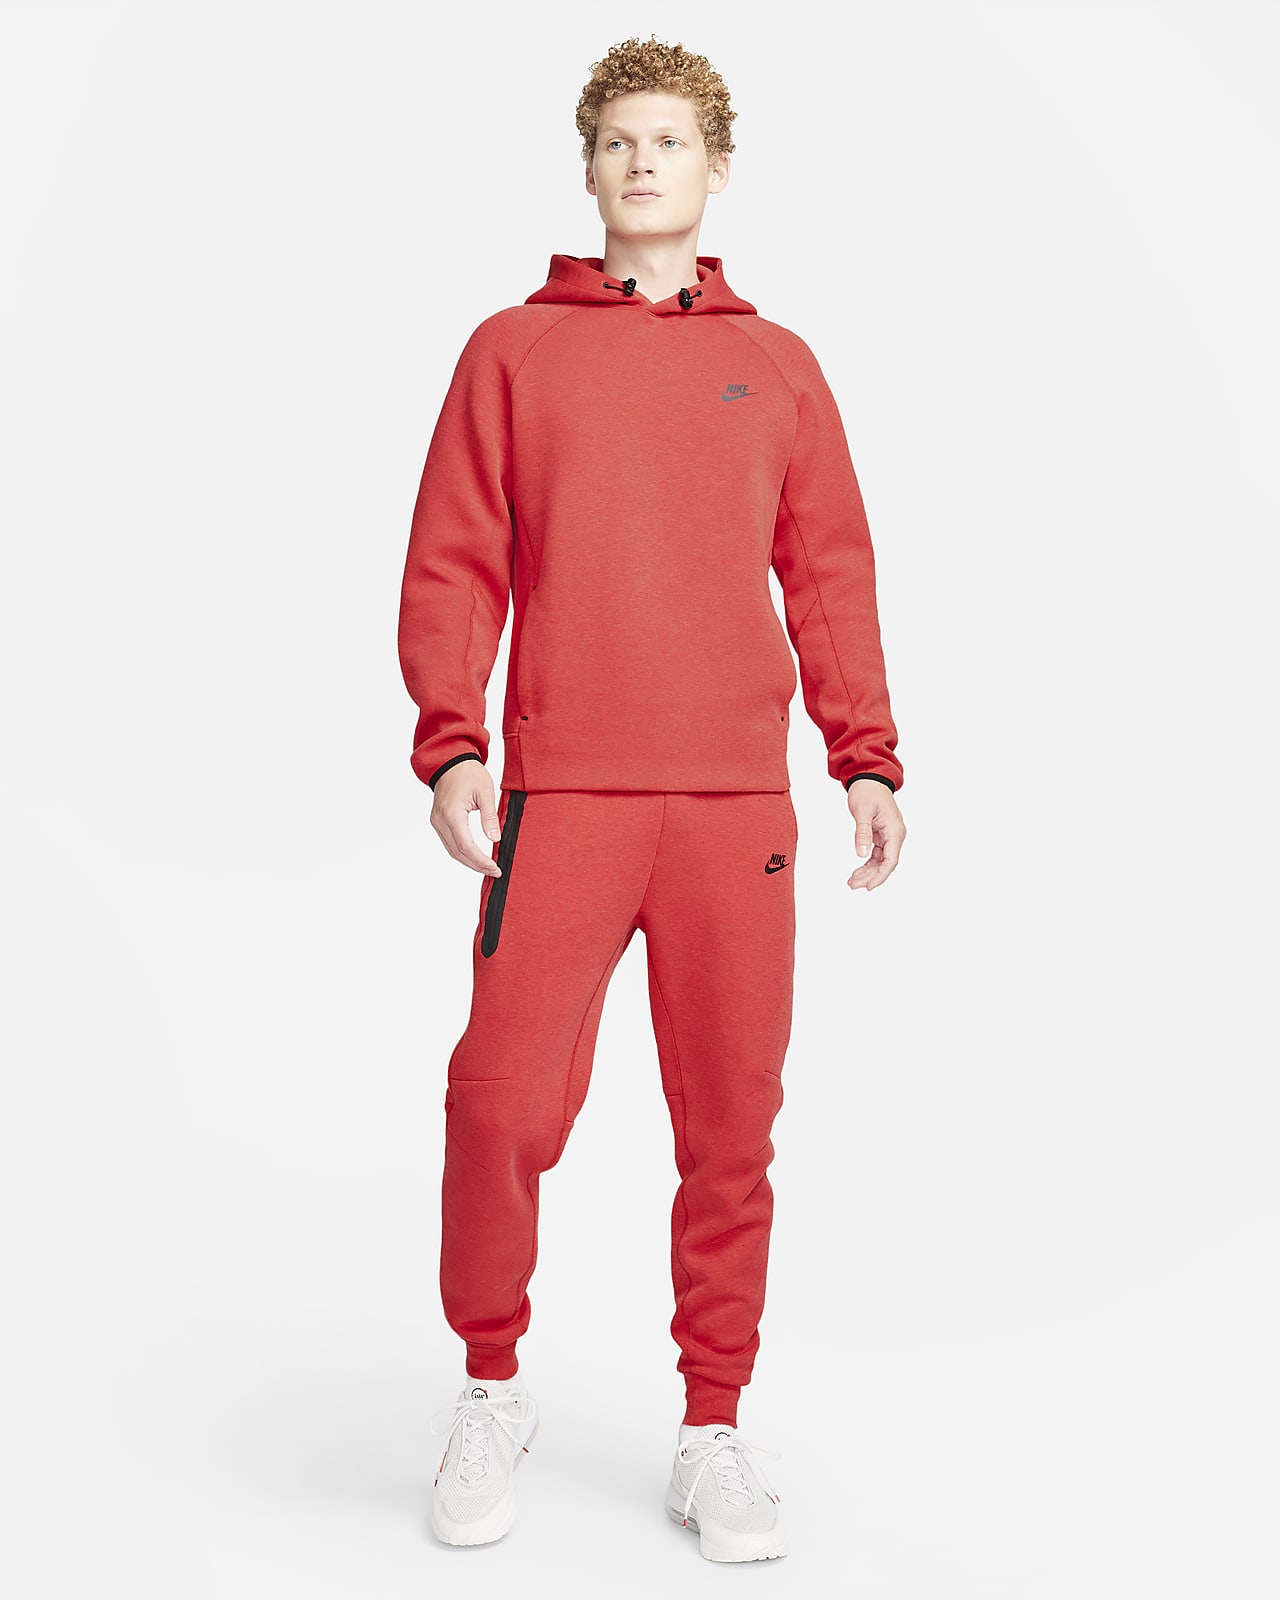 Red Tech Fleece Clothing. Nike CA